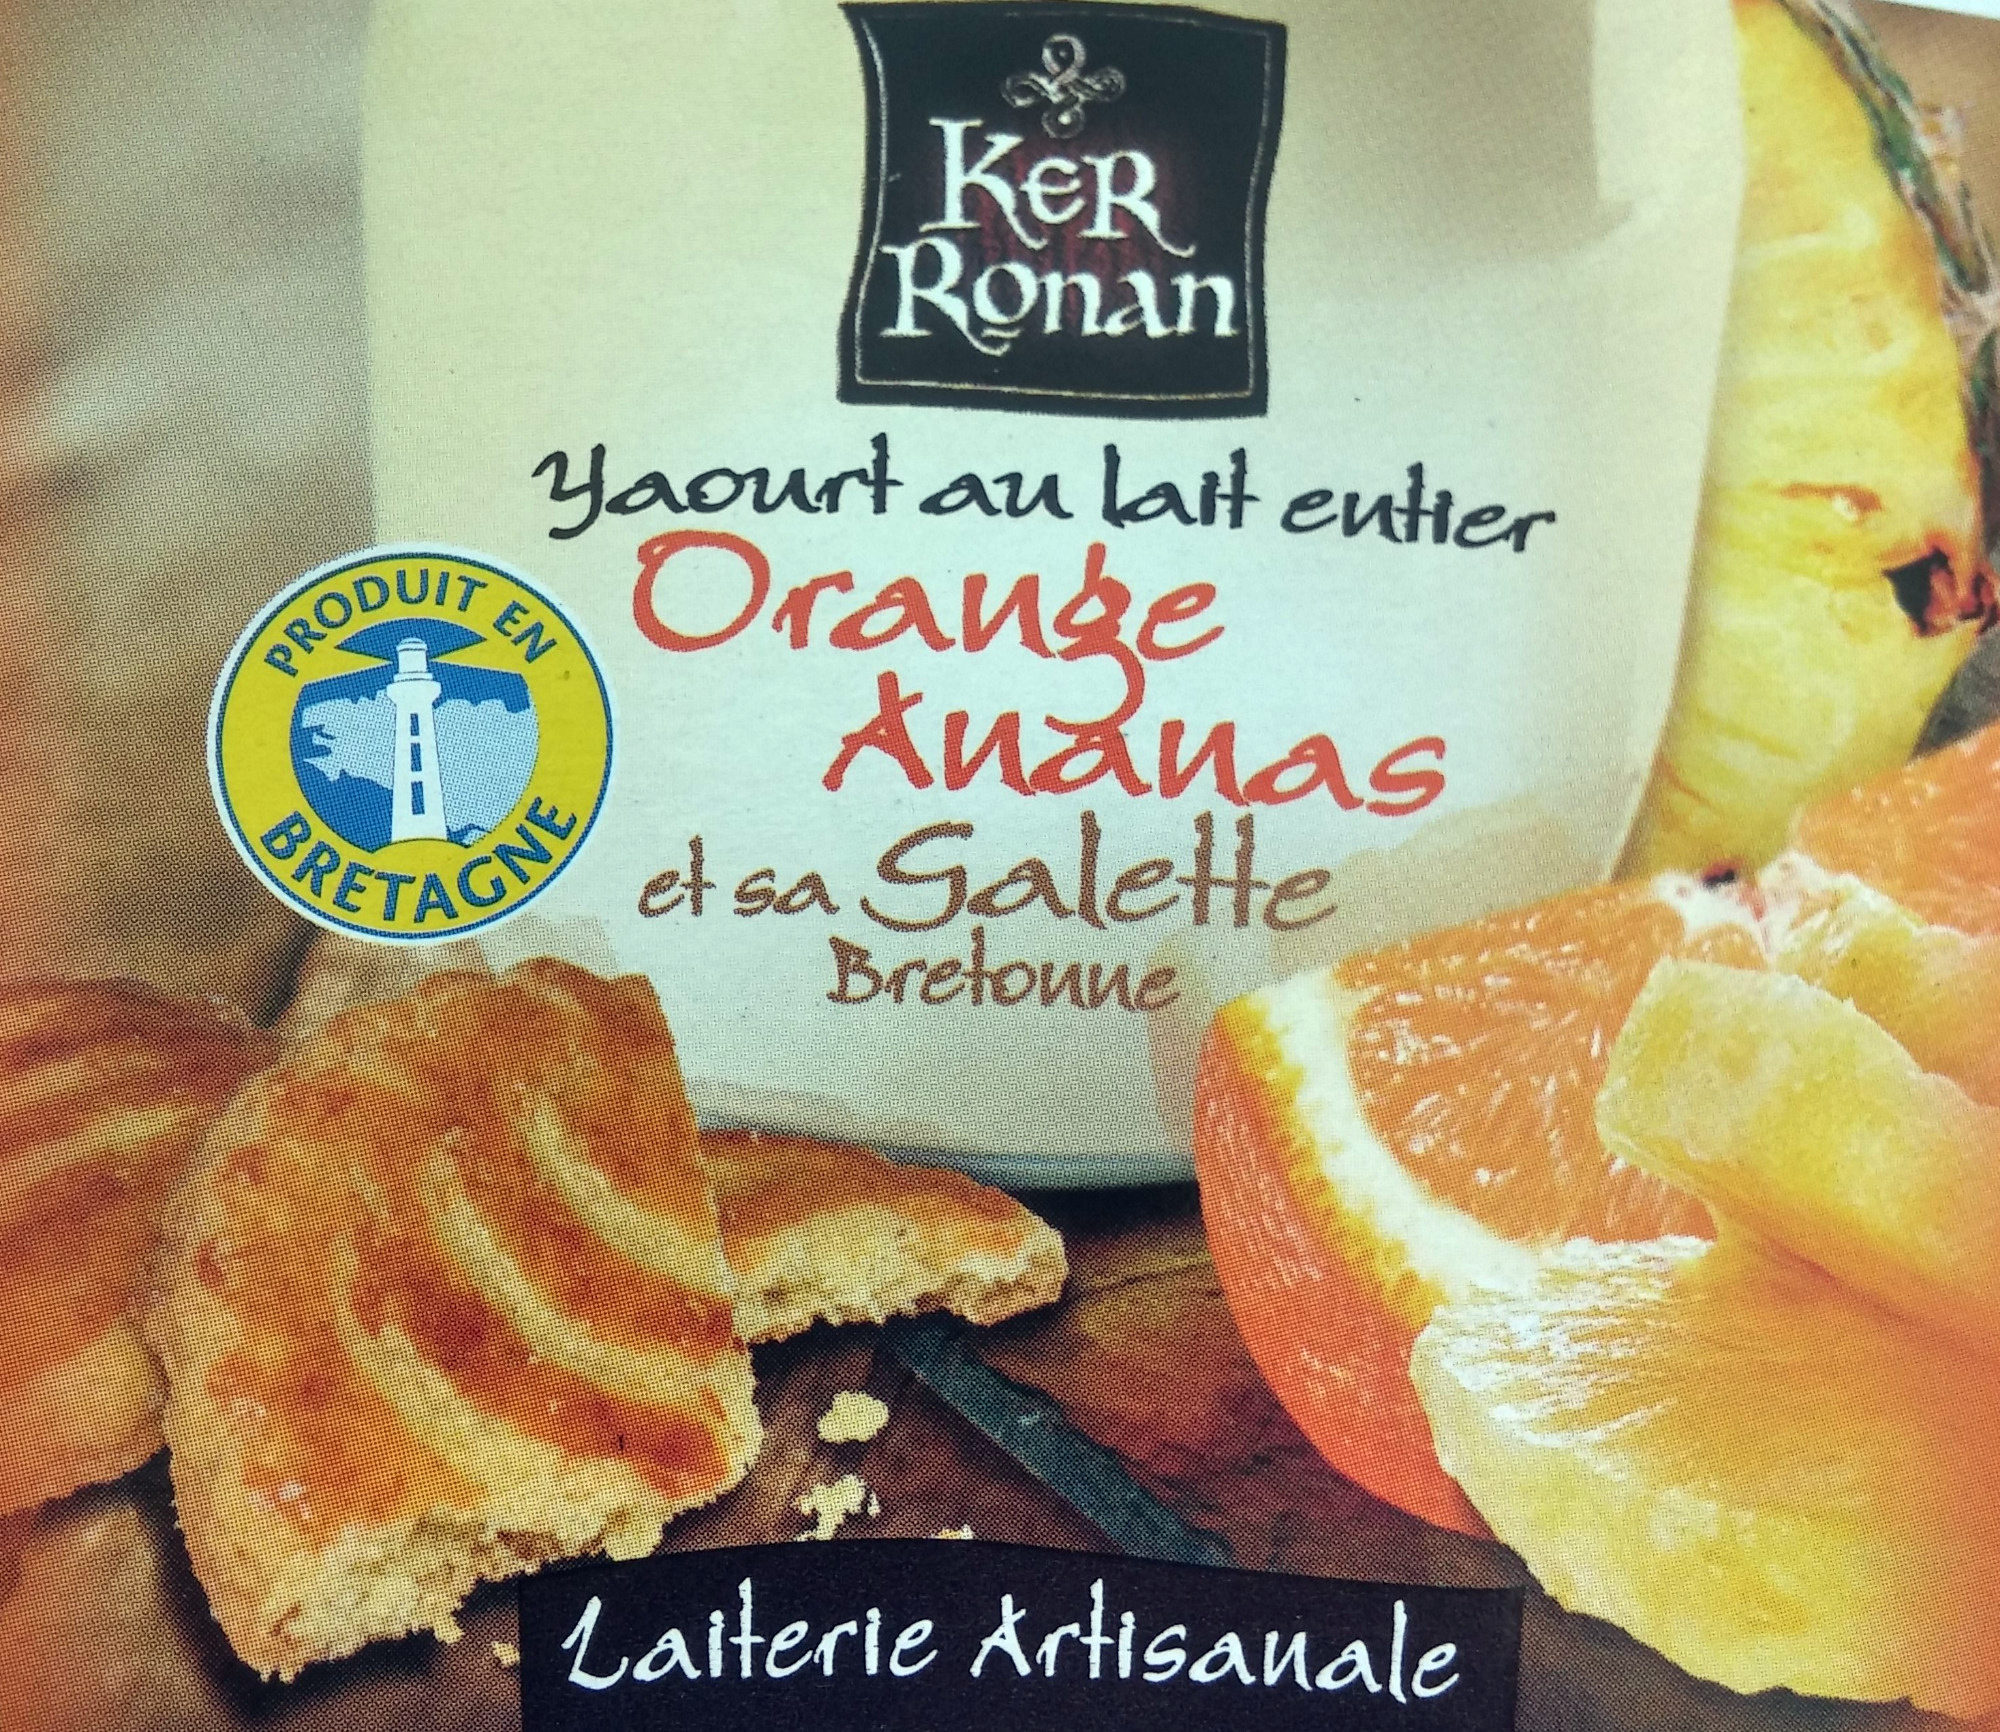 Yaourt au lait entier Orange Ananas et sa galette bretonne - Product - fr